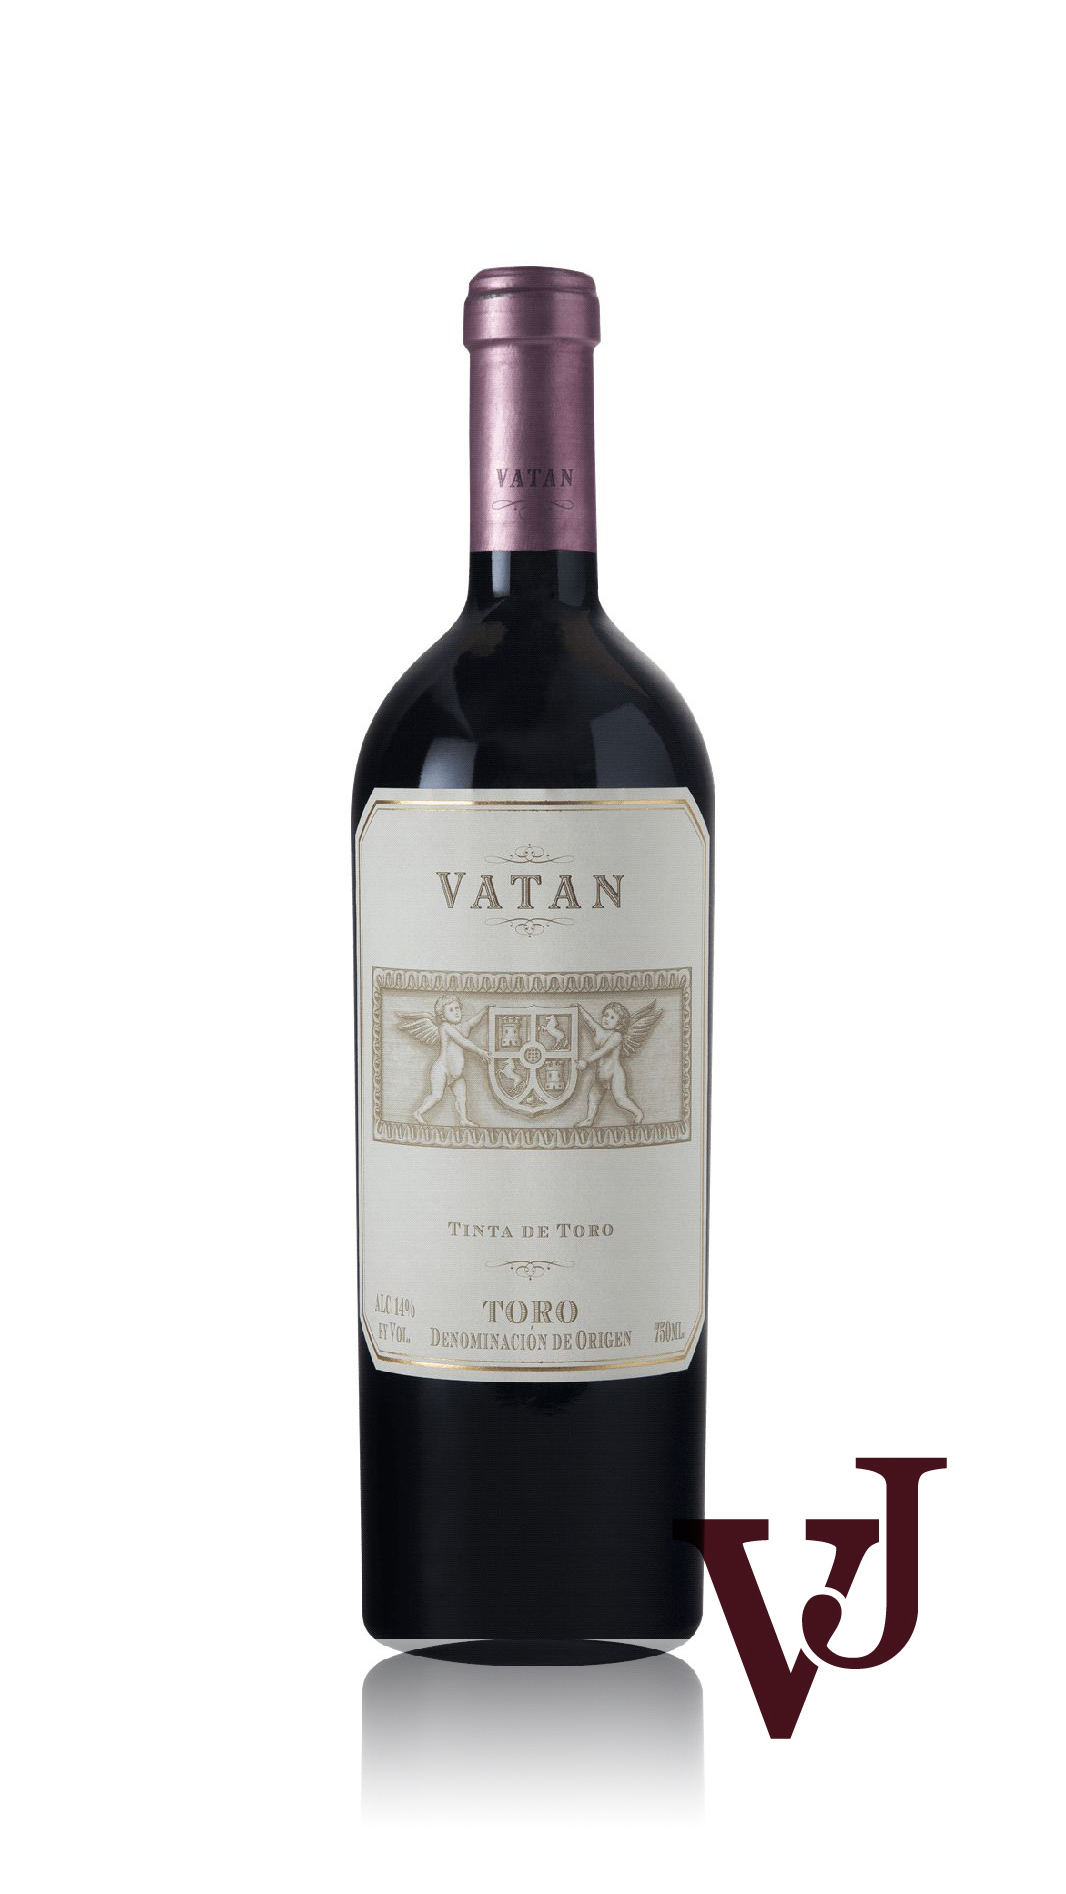 Rött Vin - Vatan artikel nummer 5311501 från producenten Bodegas Vatan S.L från området Spanien